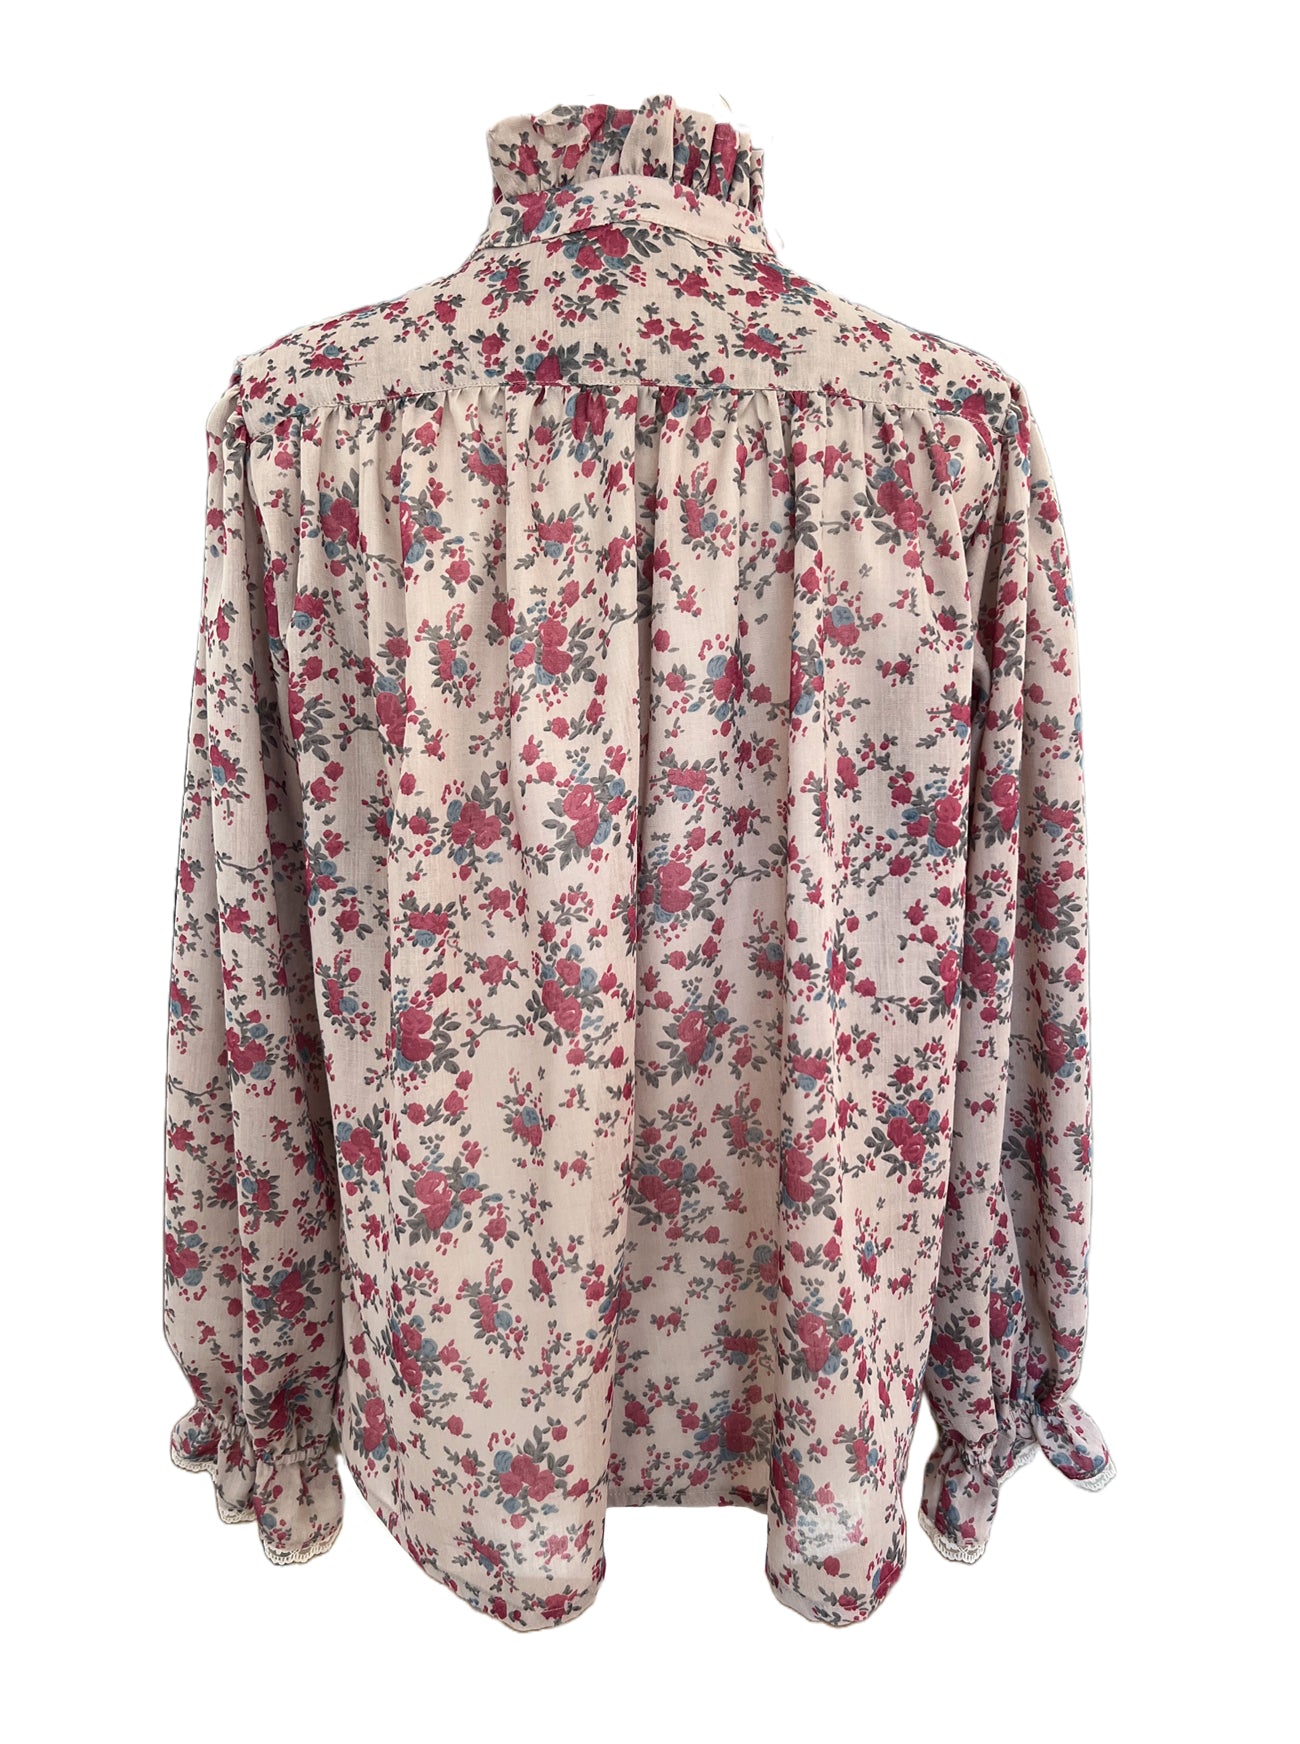 brett rose print voile blouse back view